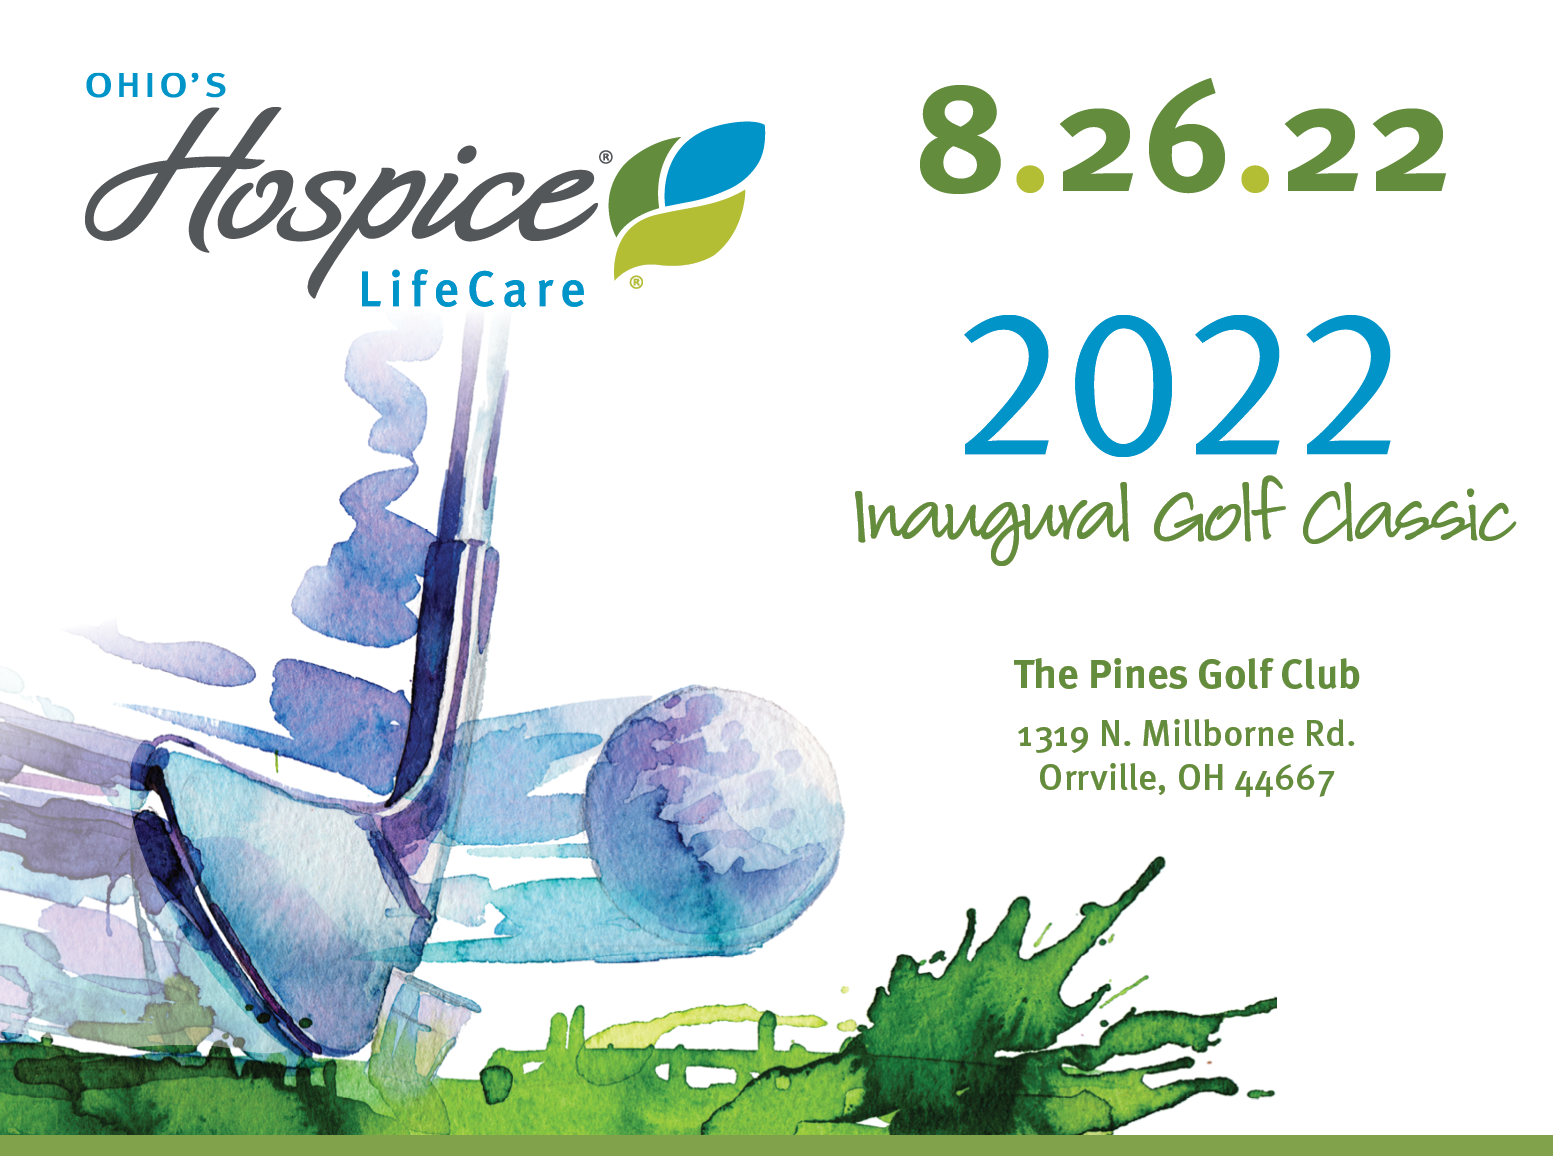 Ohio's Hospice LifeCare Golf Classic